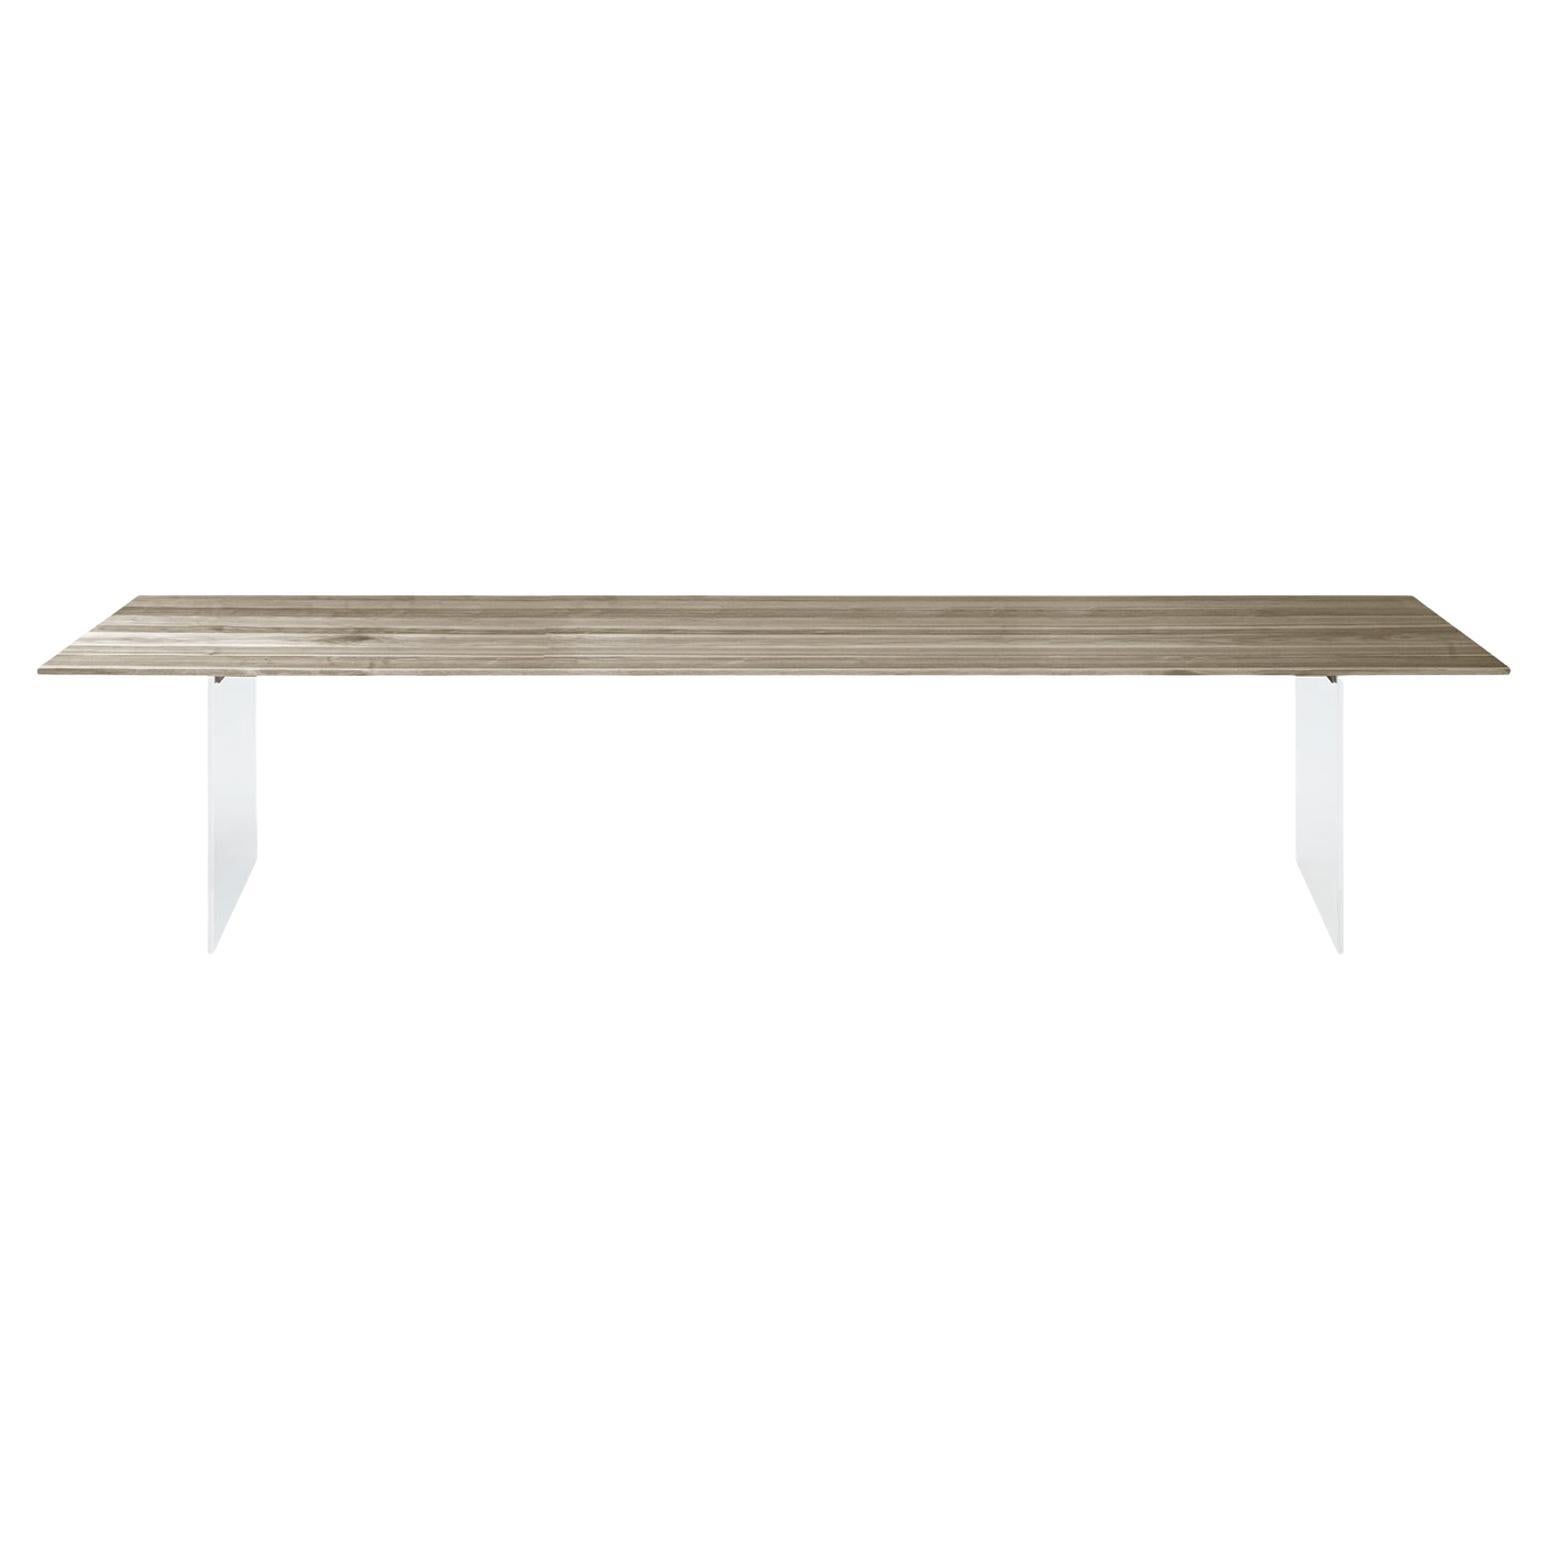 Table Sospeso en bois massif, noyer en finition gris naturel fait à la main, contemporaine